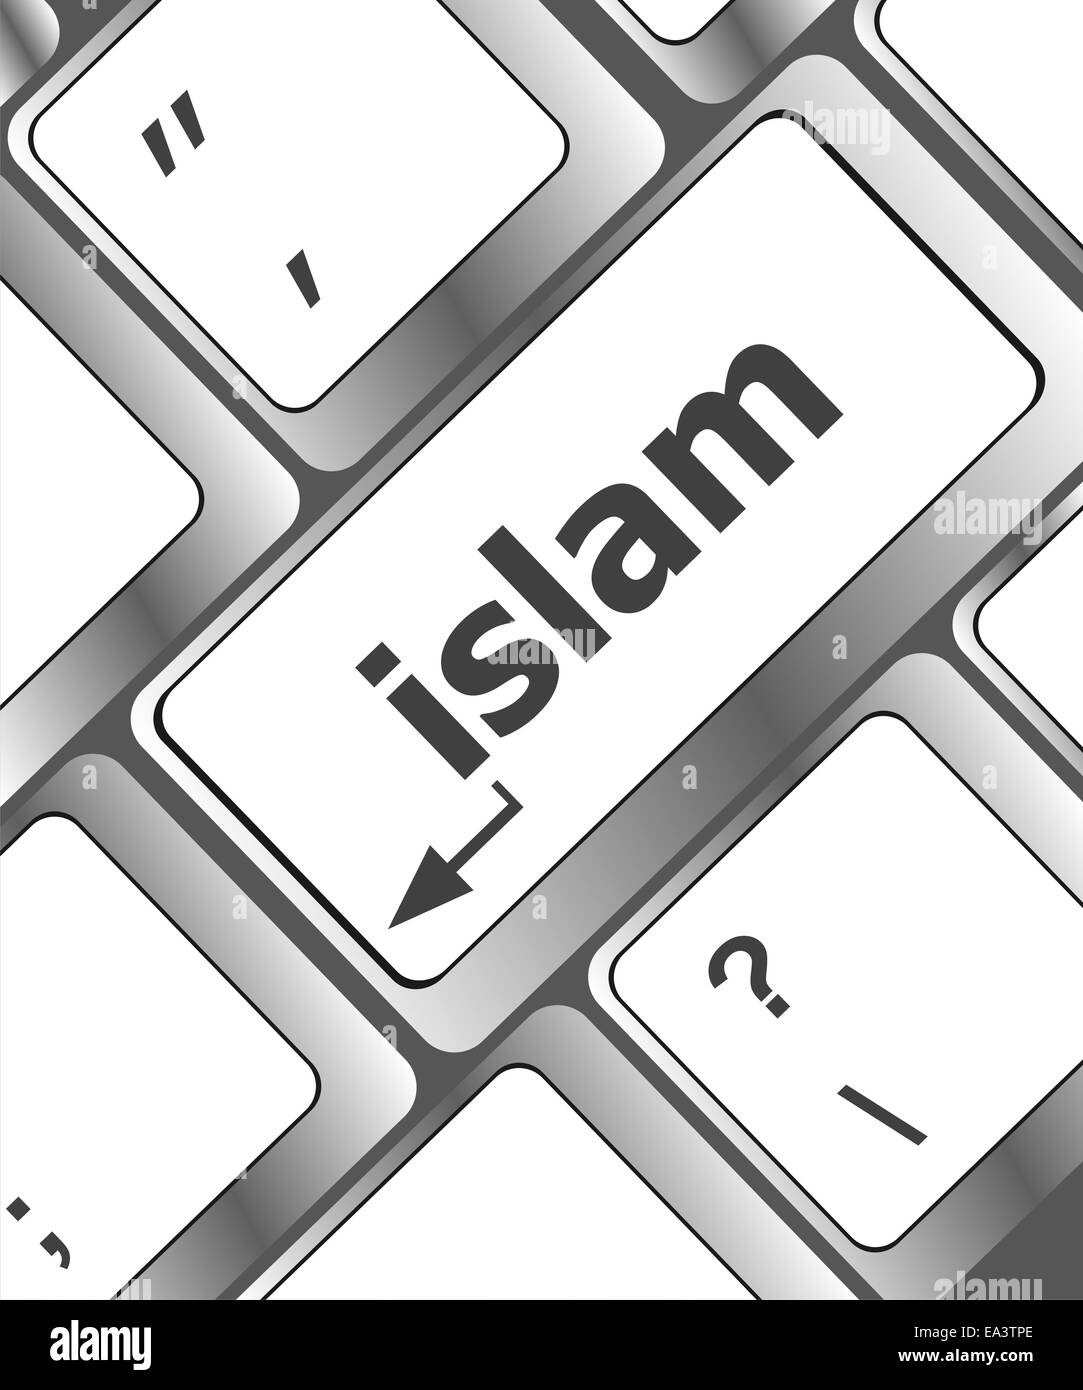 L'islam sulla parola chiave del computer sul pulsante INVIO Foto Stock